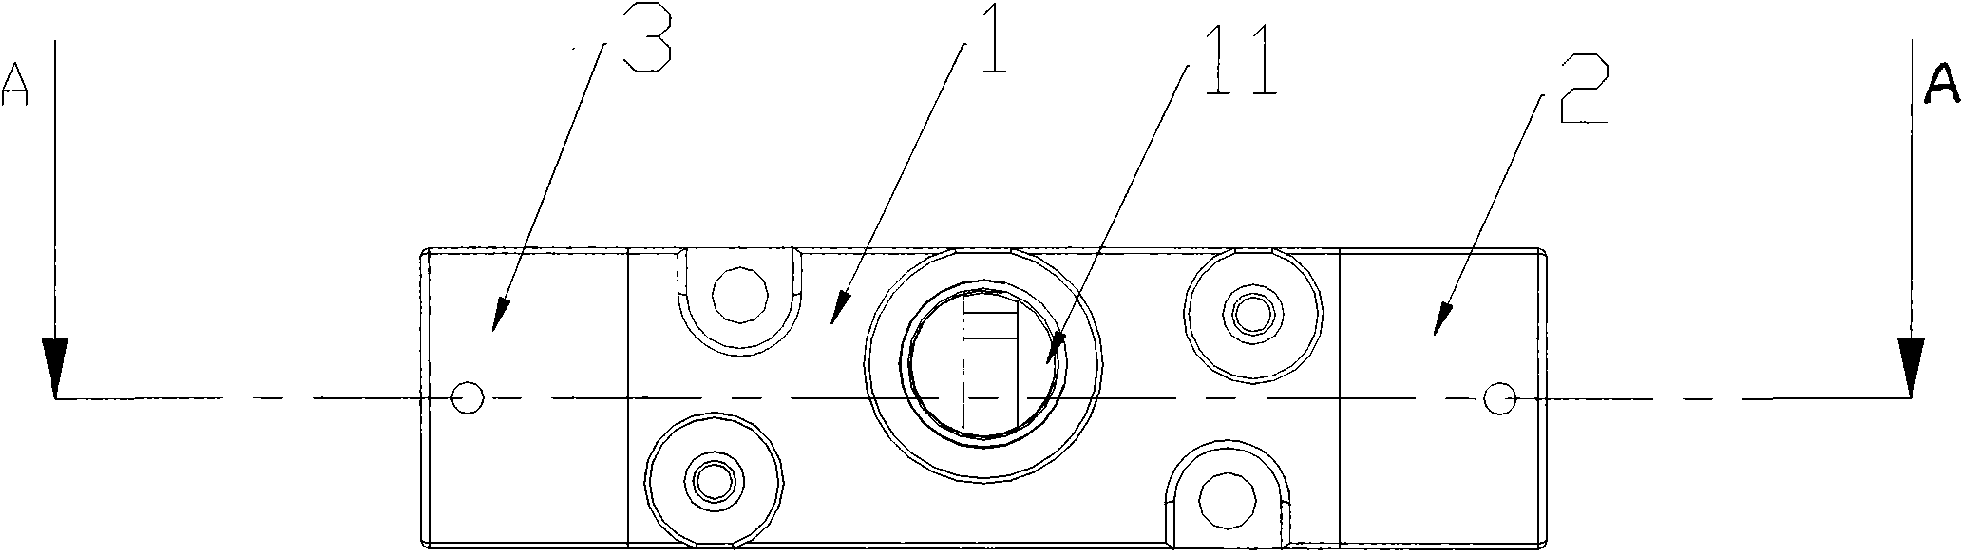 Strut type shuttle valve